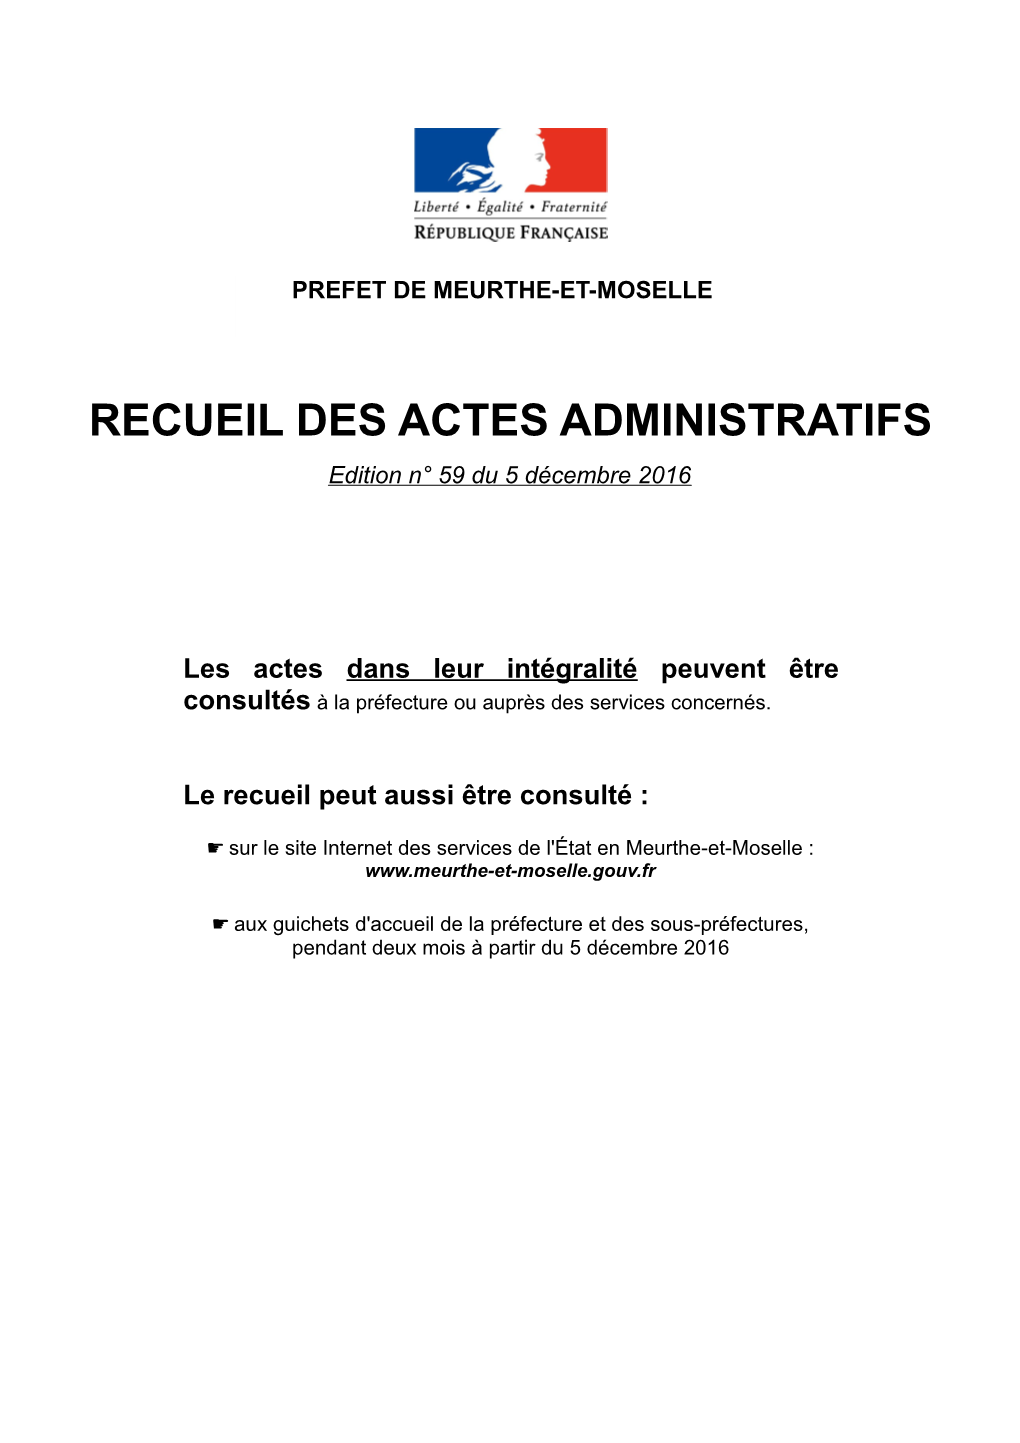 RECUEIL DES ACTES ADMINISTRATIFS Edition N° 59 Du 5 Décembre 2016